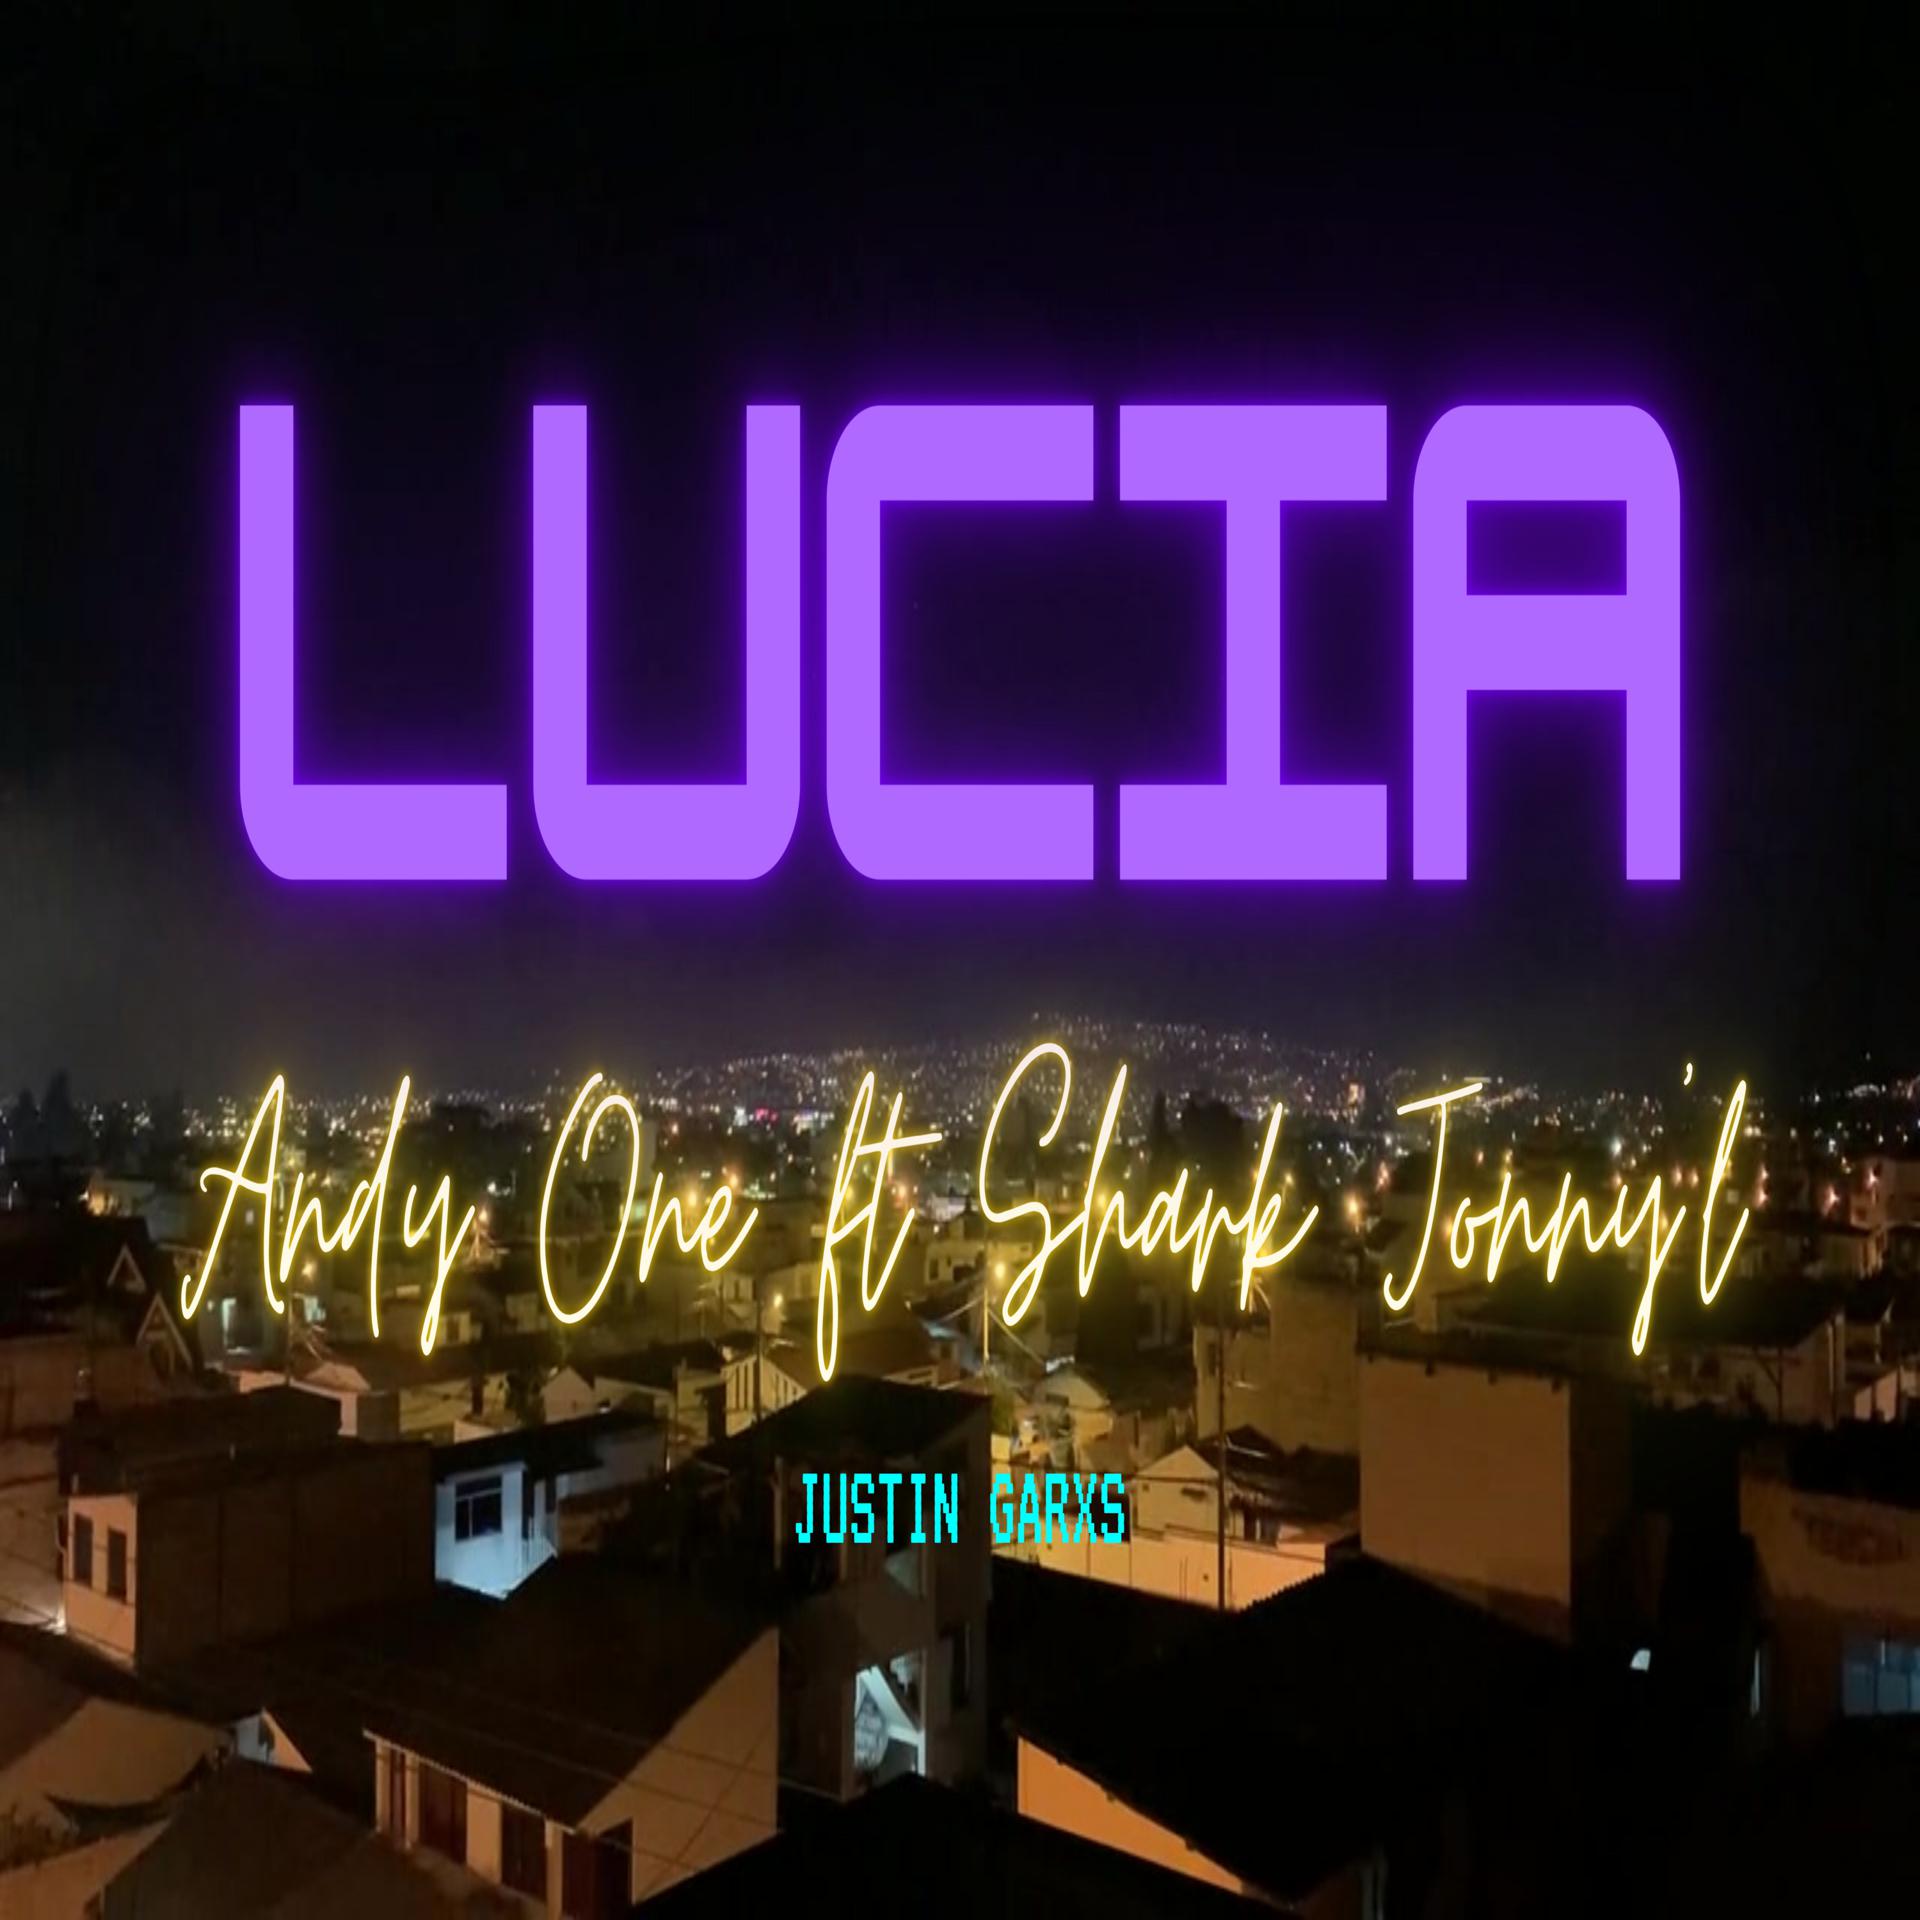 Постер альбома Lucia